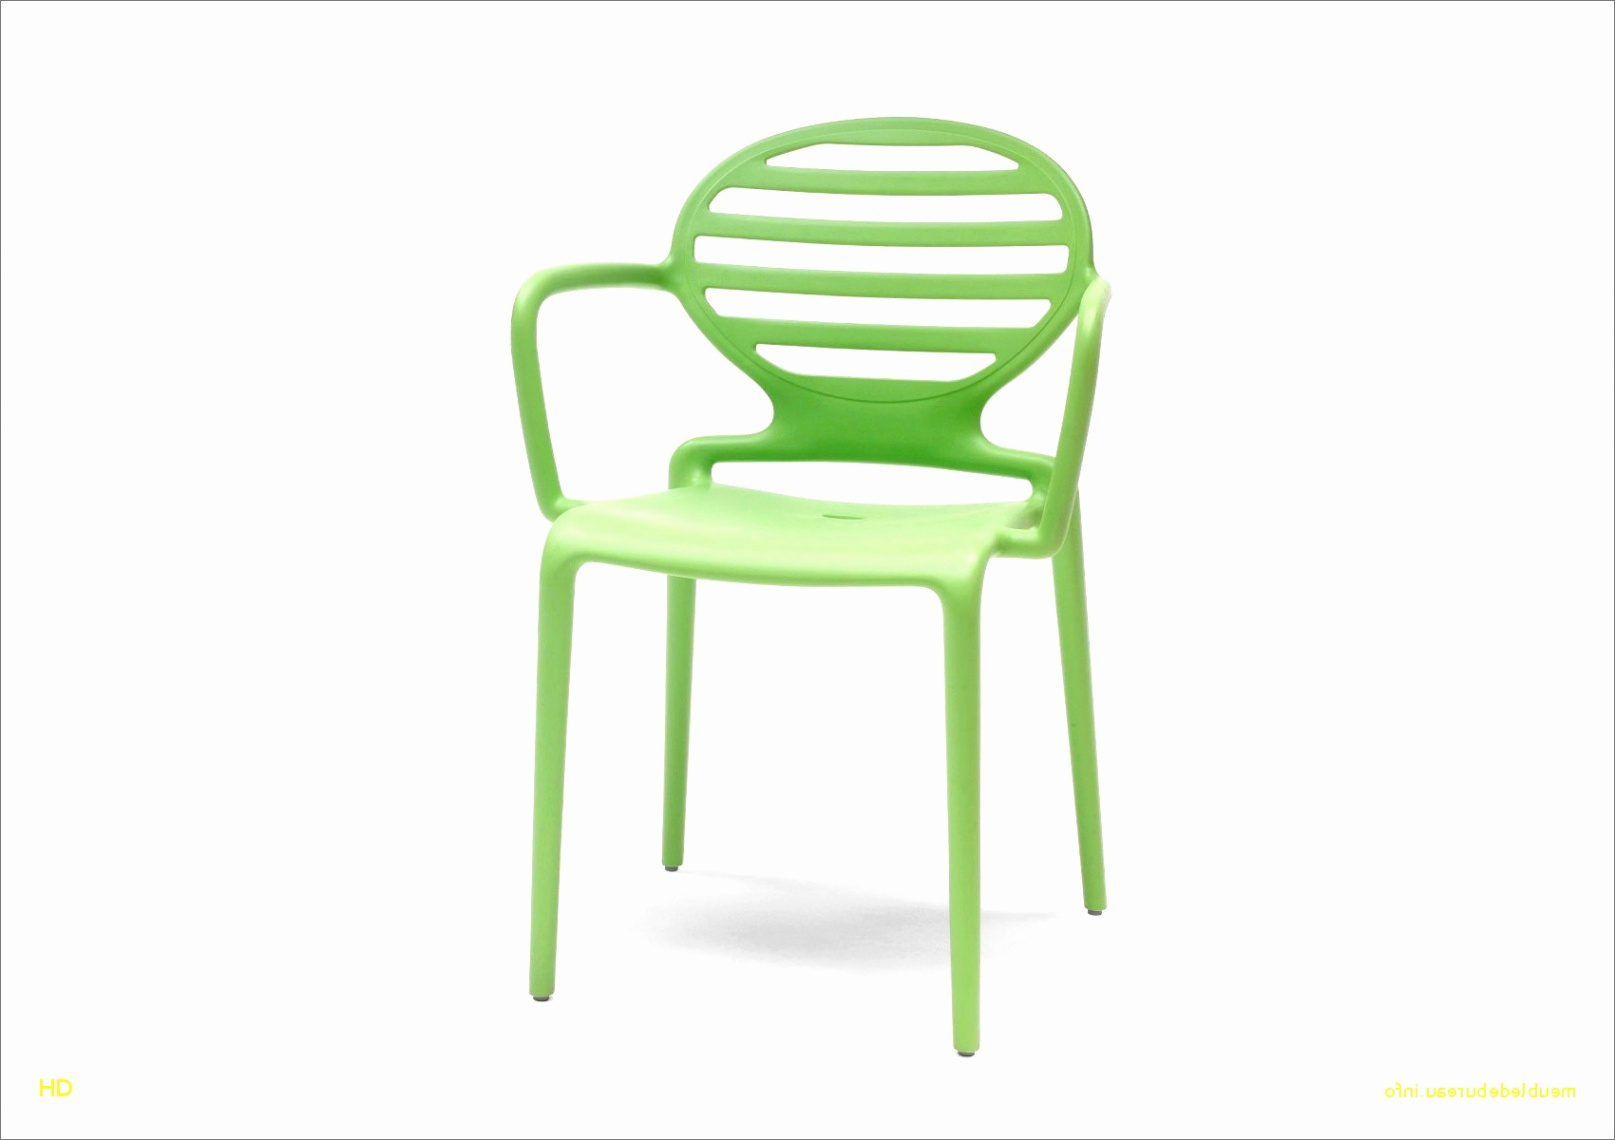 fauteuil scandinave a bascule nouveau chaise scandinave alinea elegant chaise scandinave alinea chaise of fauteuil scandinave a bascule